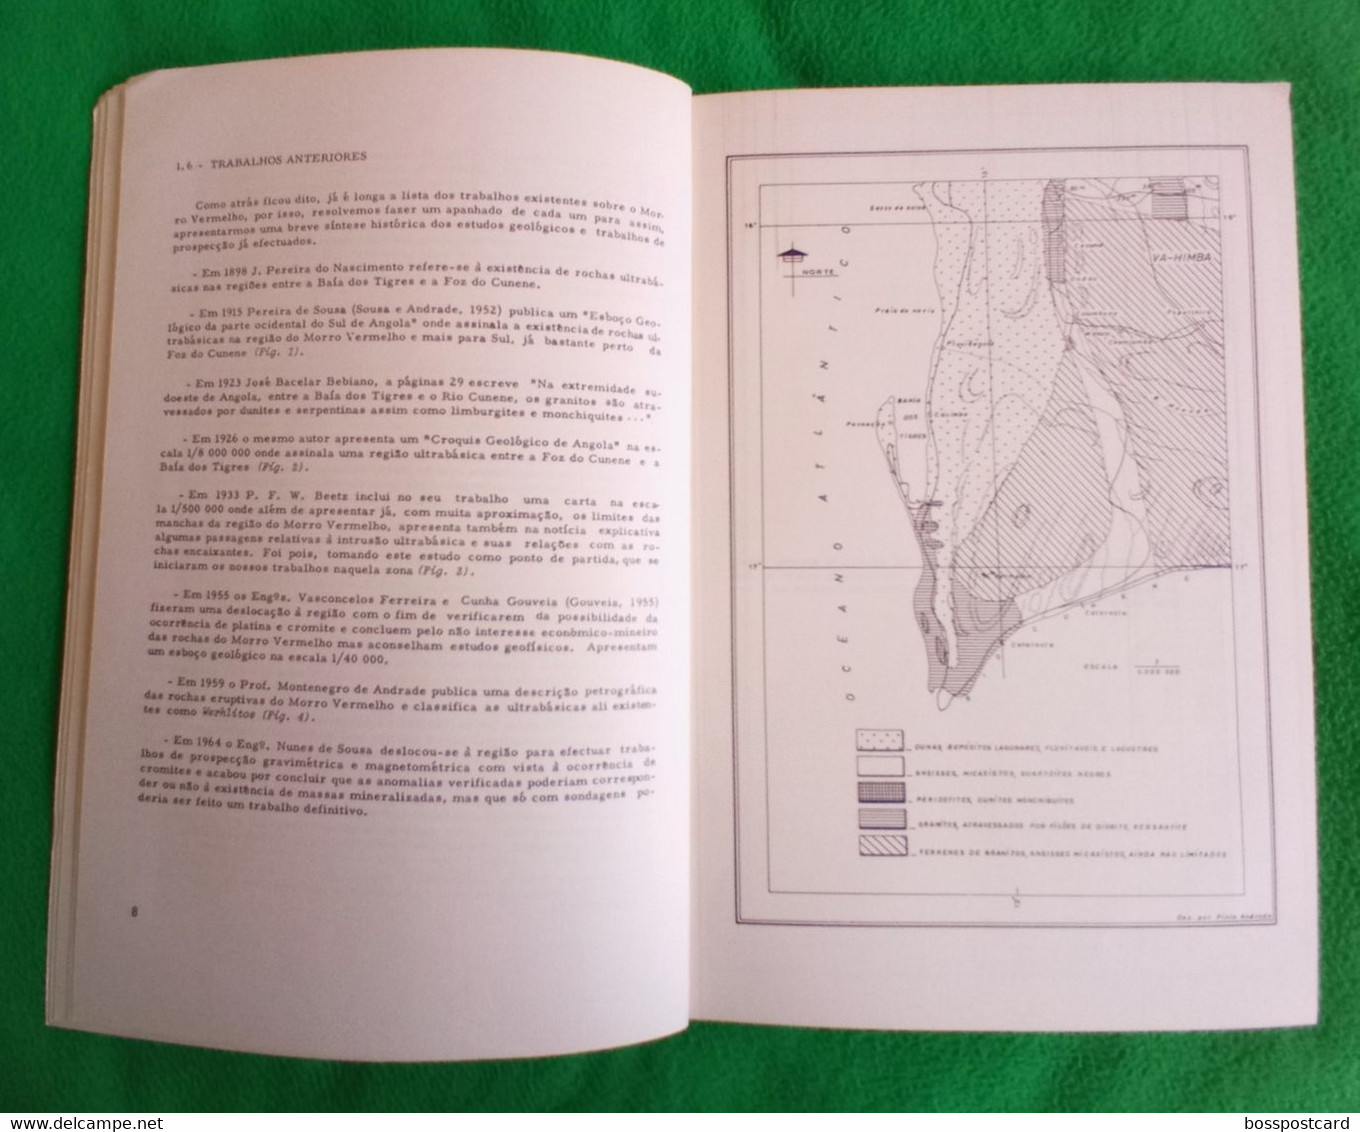 Angola - Nota Prévia Sobre A Geologia Da Região Do Morro Vermelho (Baía Dos Tigres), 1970 - Minas - Mines - Portugal - Otros Planes